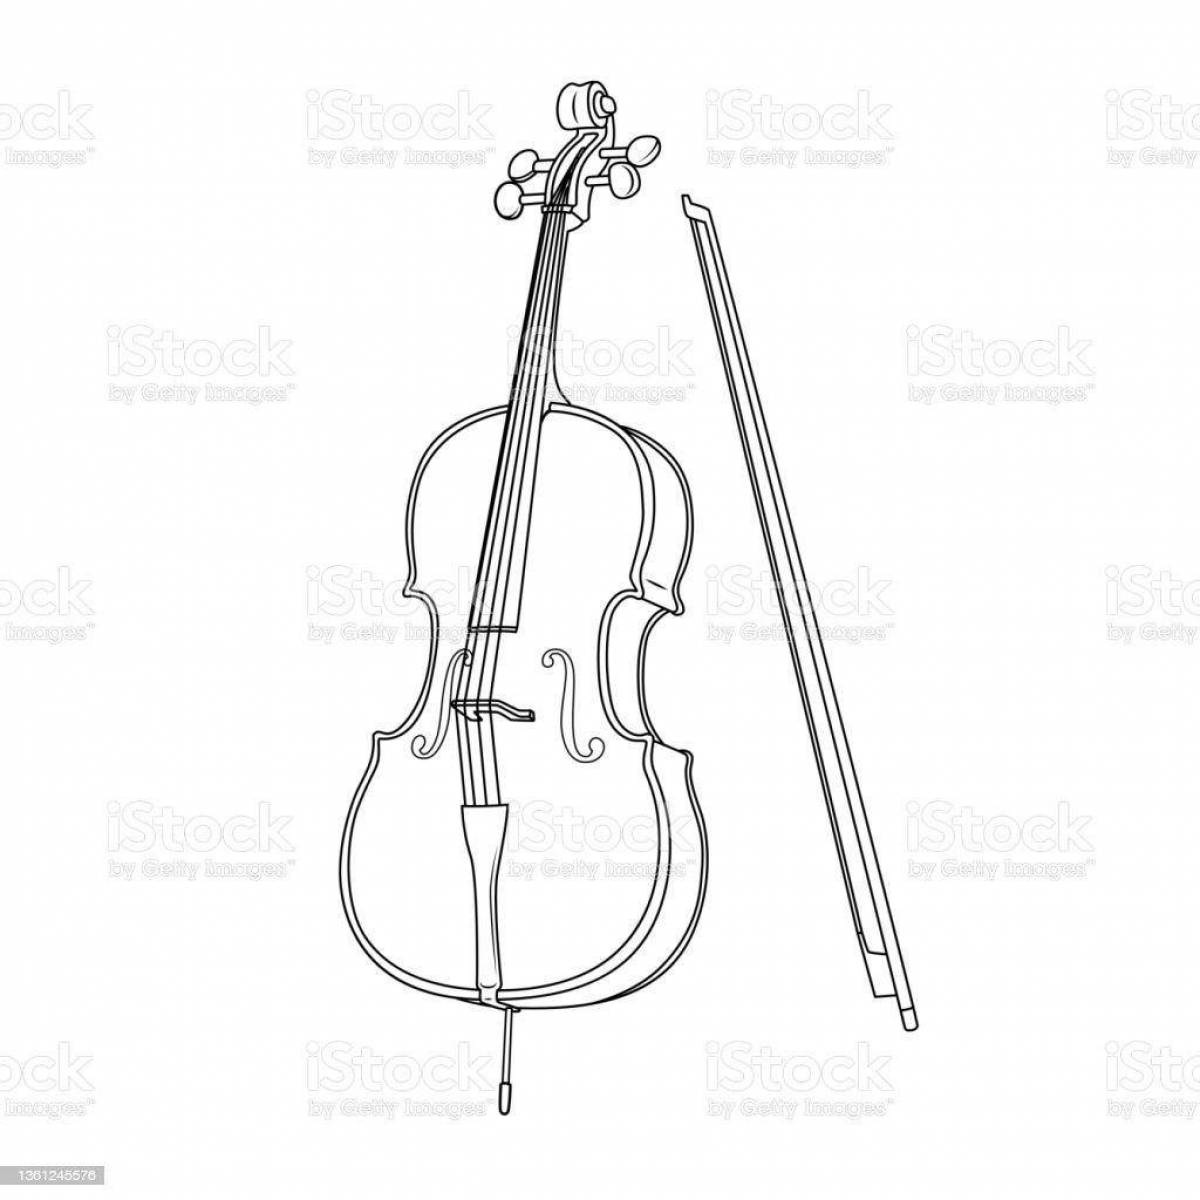 Изысканная страница раскраски скрипки и виолончели